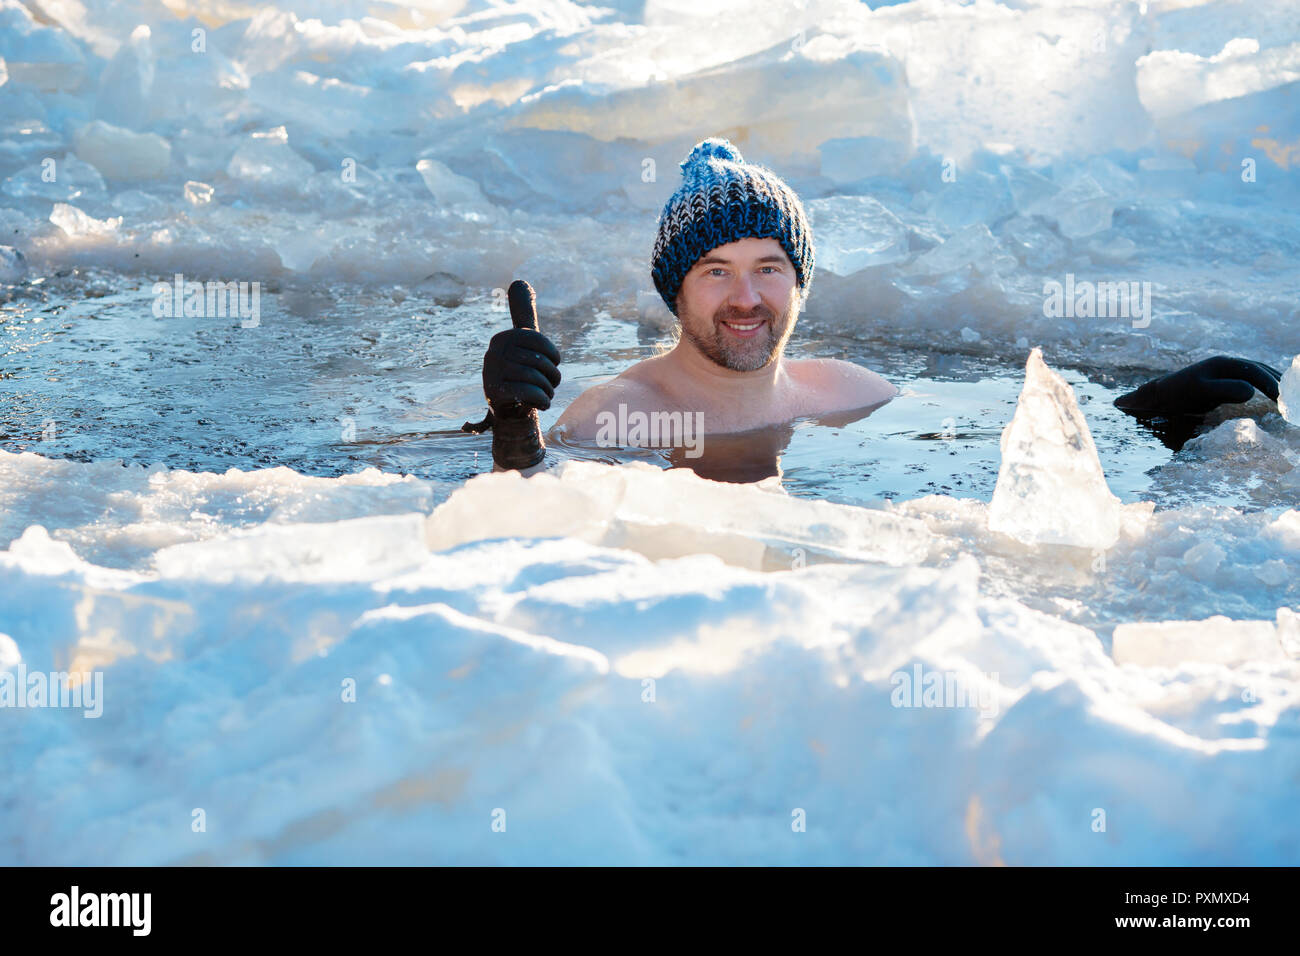 Piscina de Invierno. Hombre valiente en un agujero de hielo. Foto de stock